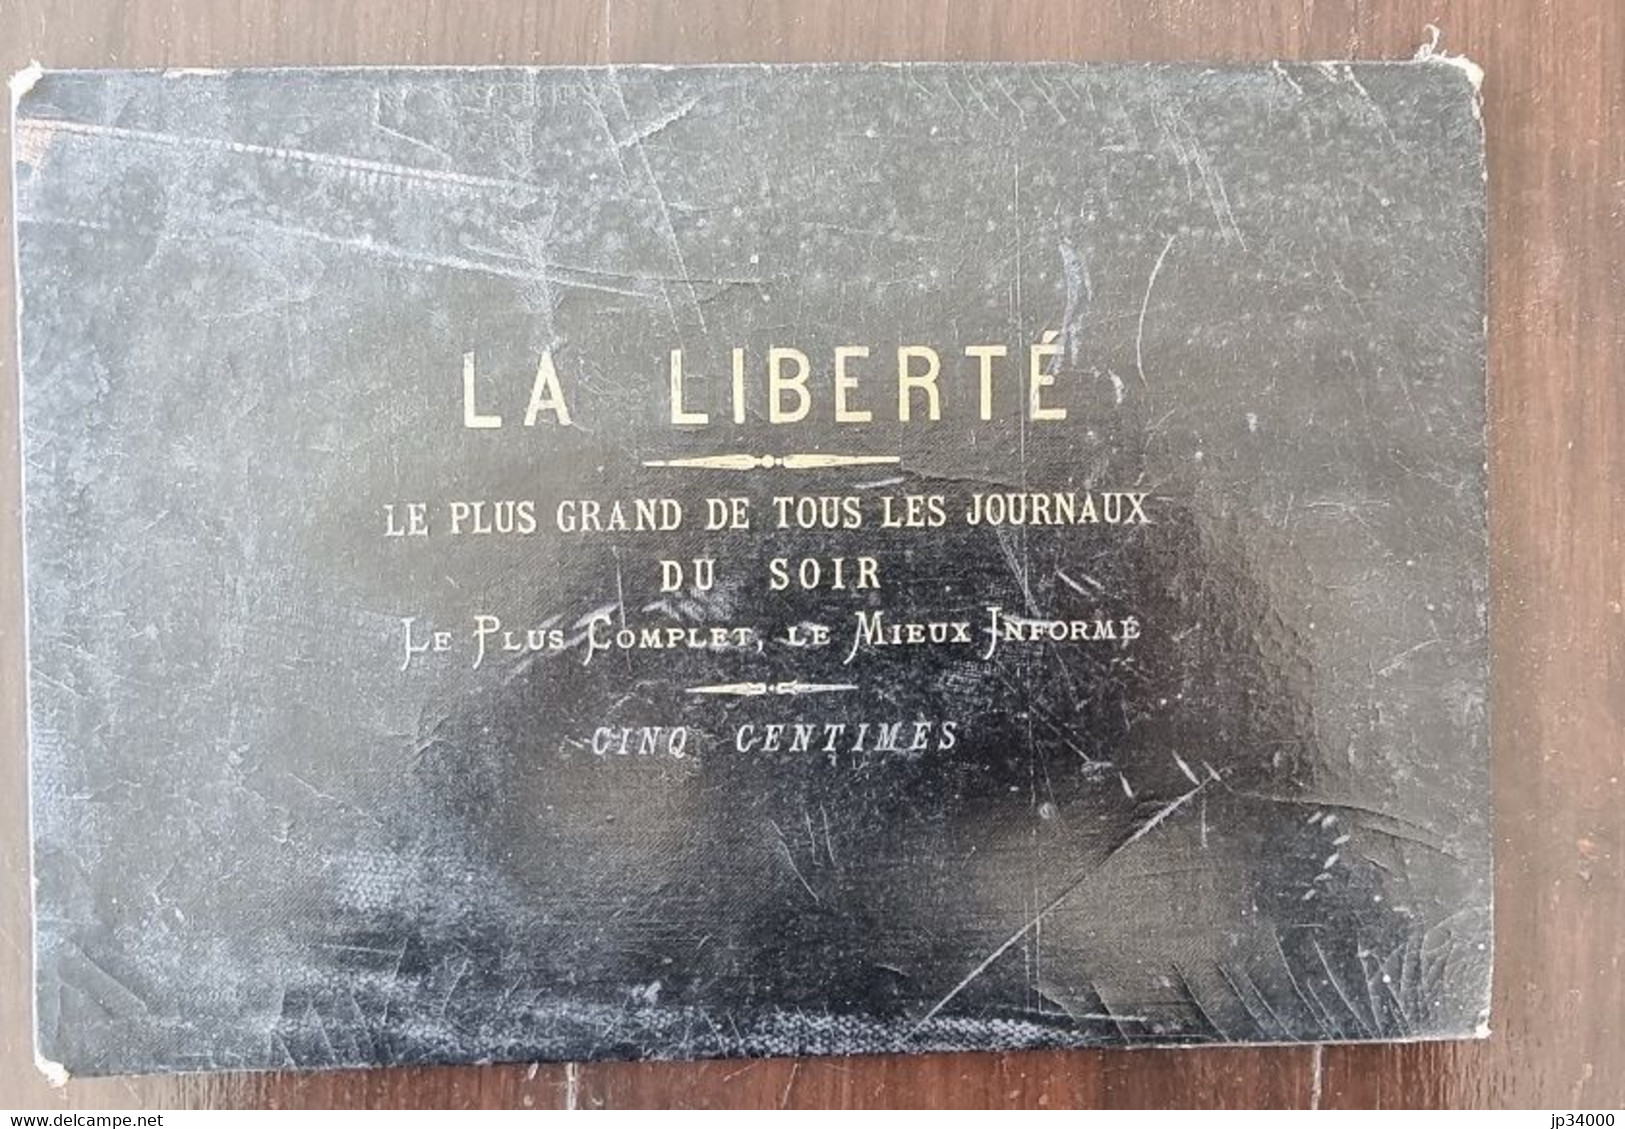 Calendrier Perpétuel Publicitaire (Journal LA LIBERTE 1900) - Grand Format : 1901-20